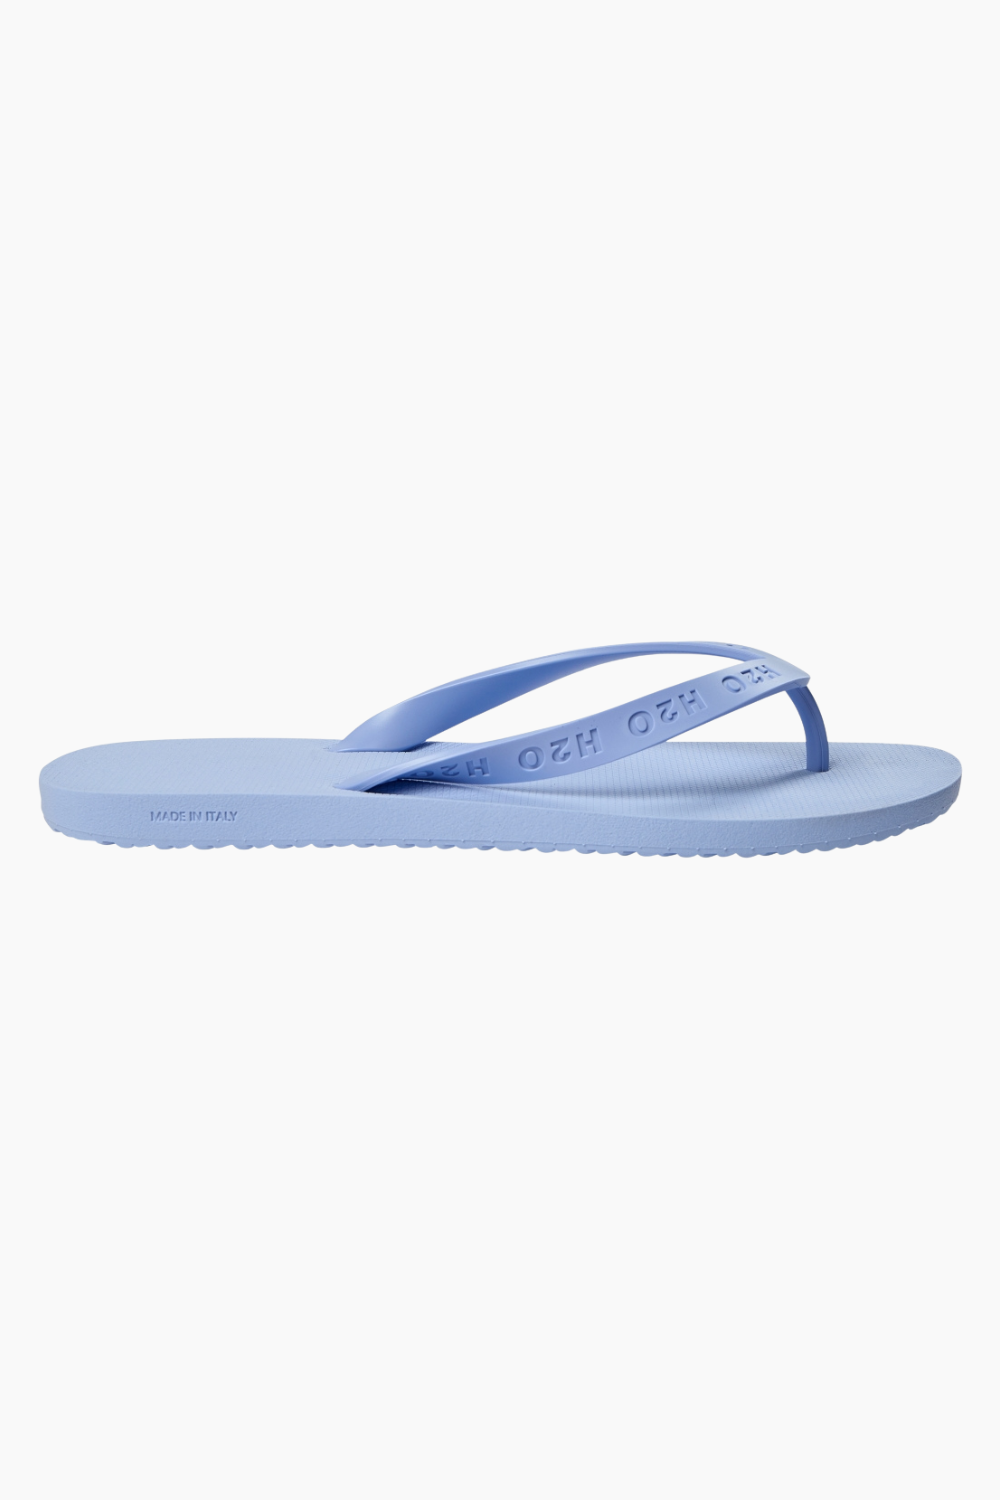 Flip Flop - Pastel Blue - H2O